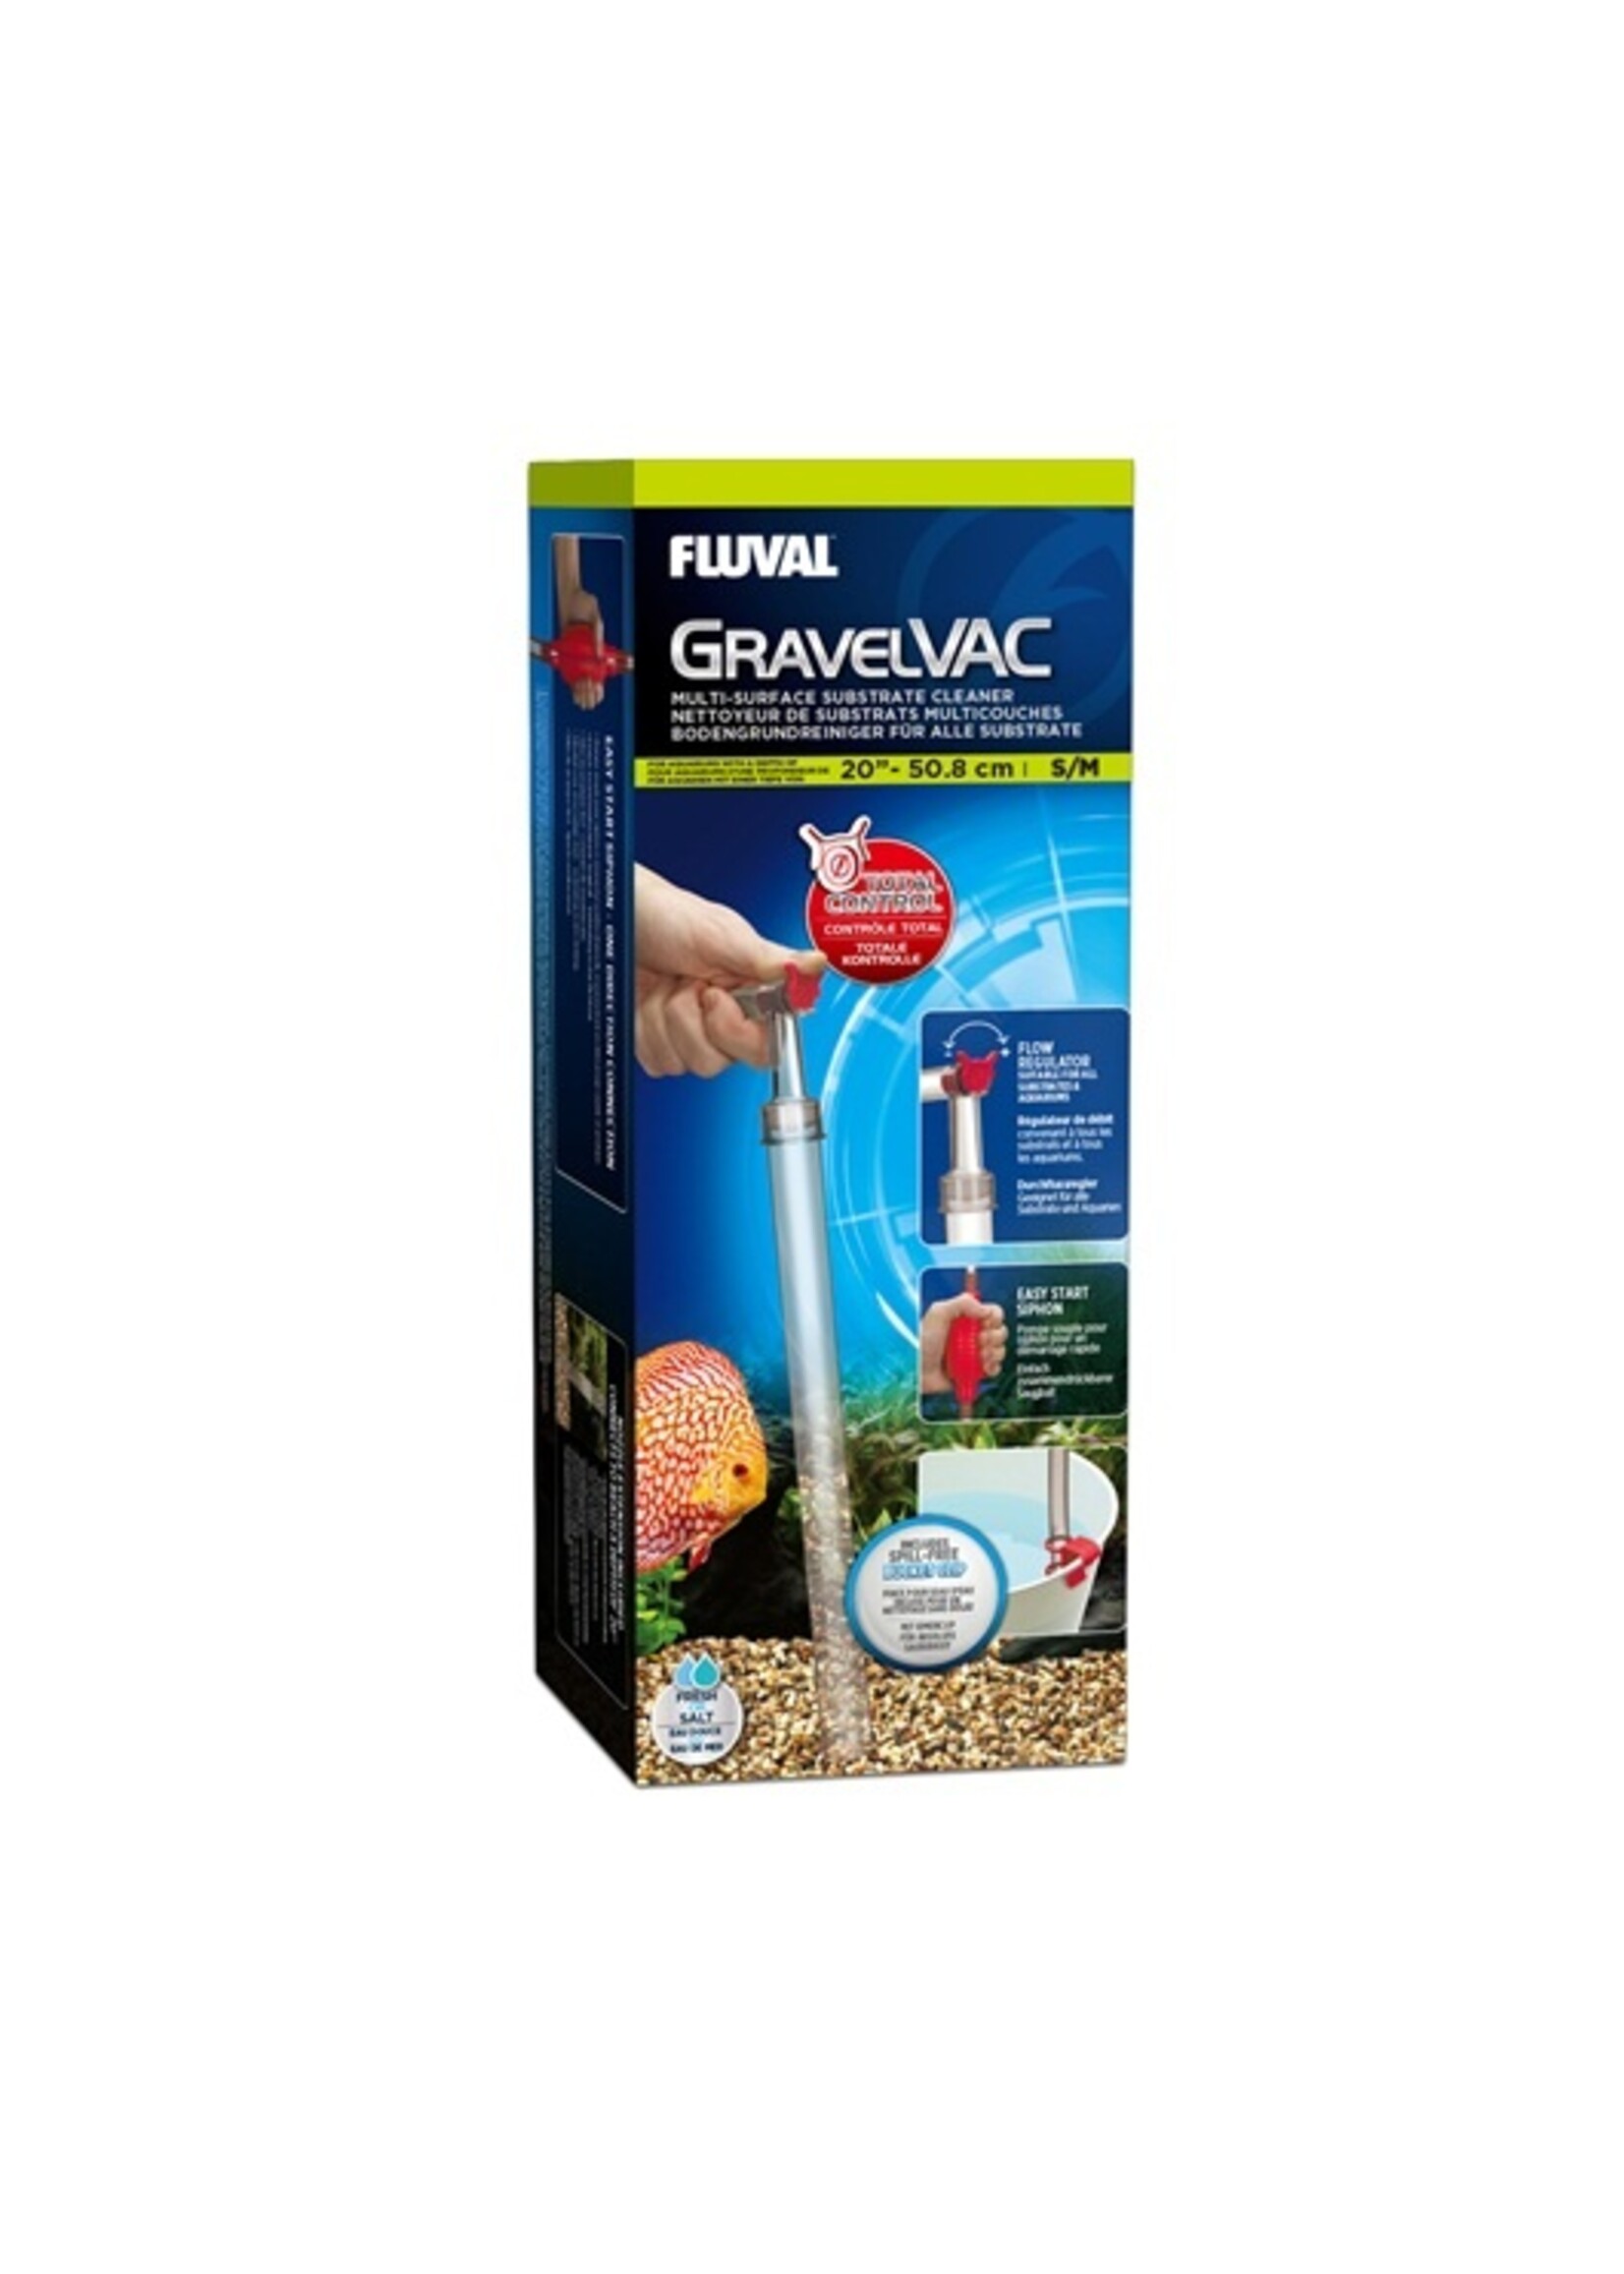 Fluval Fluval Gravel Vac Multi-Substrate Cleaner